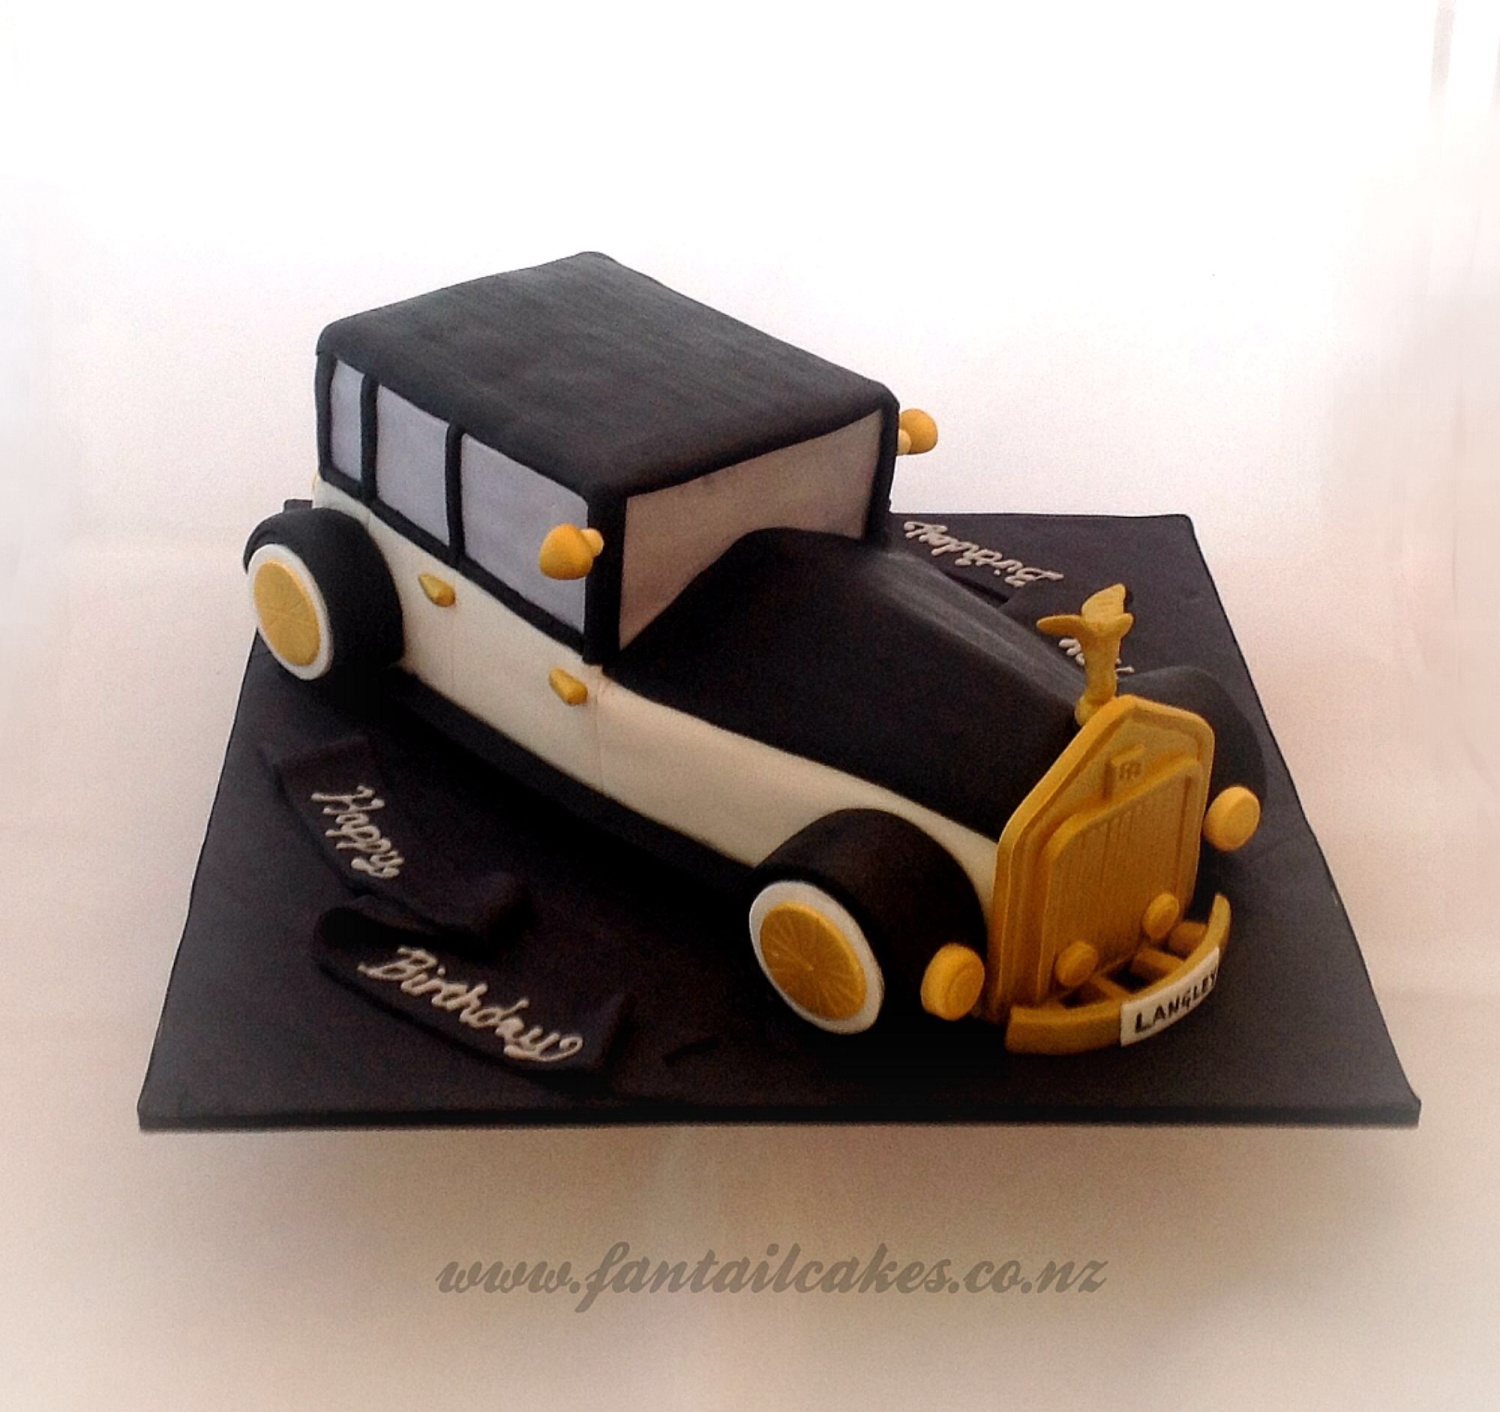 CakesDecor Theme: Sculpted Car Cakes - CakesDecor